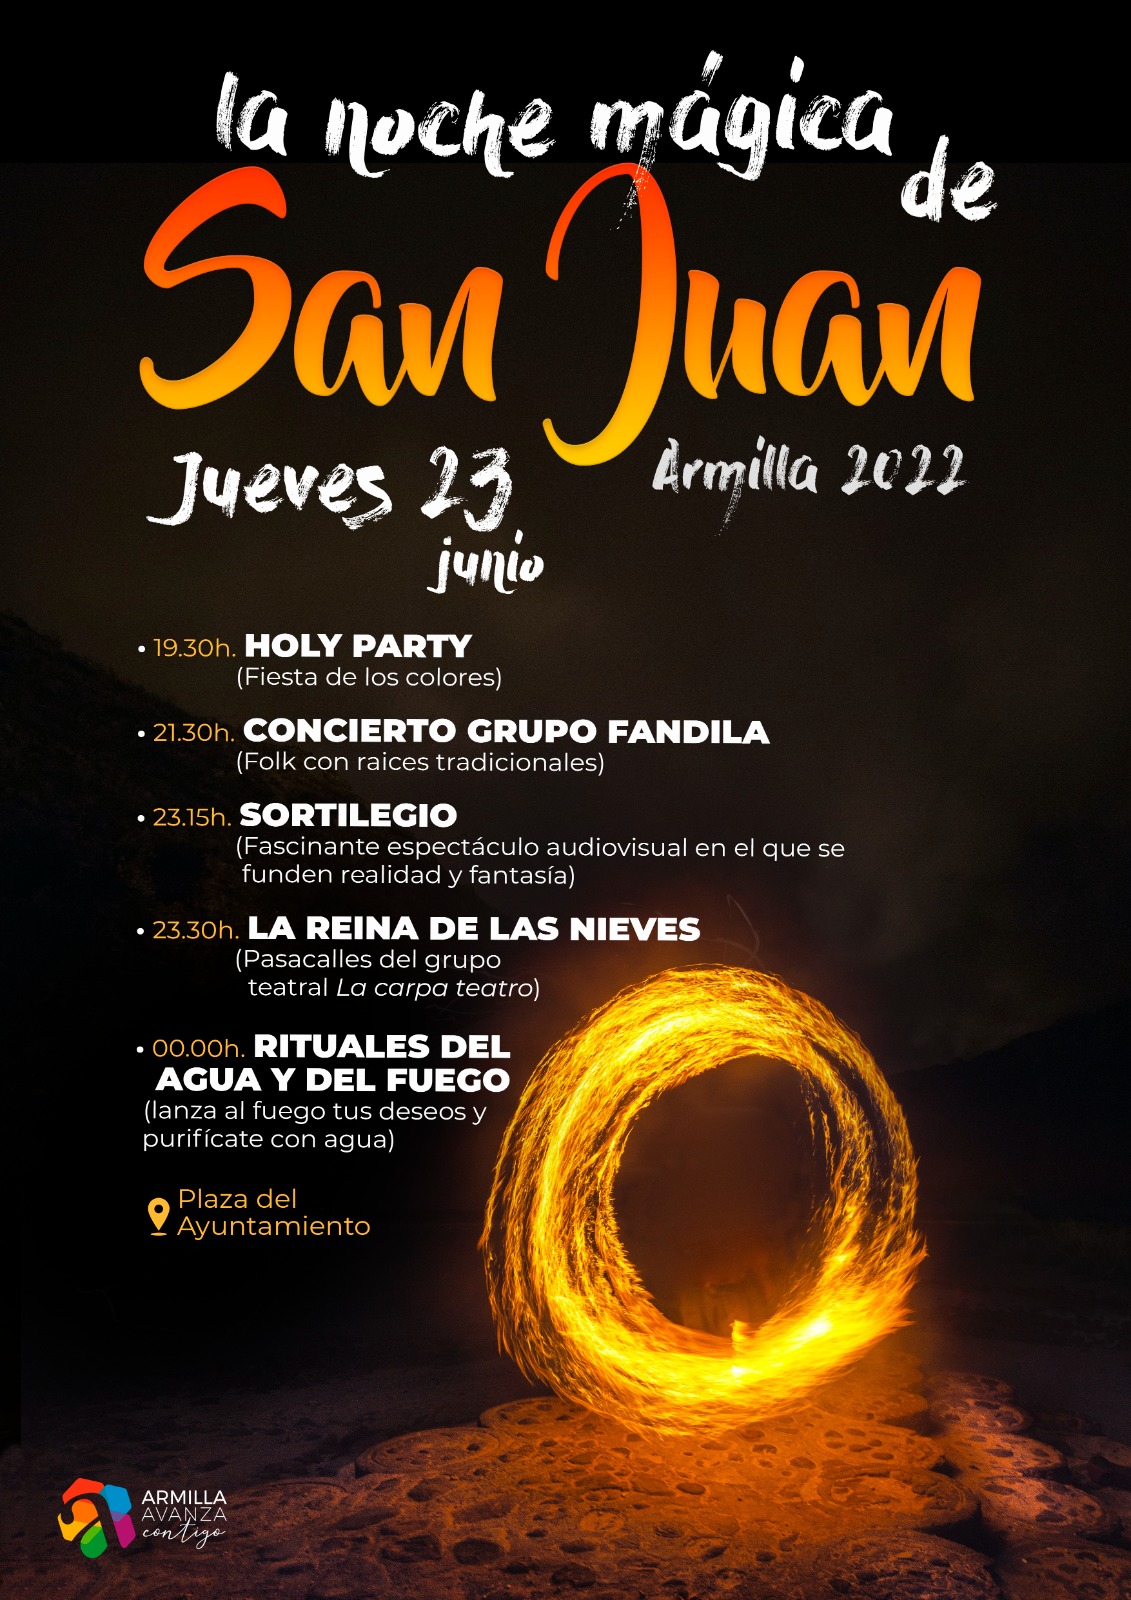 Noche de San Juan